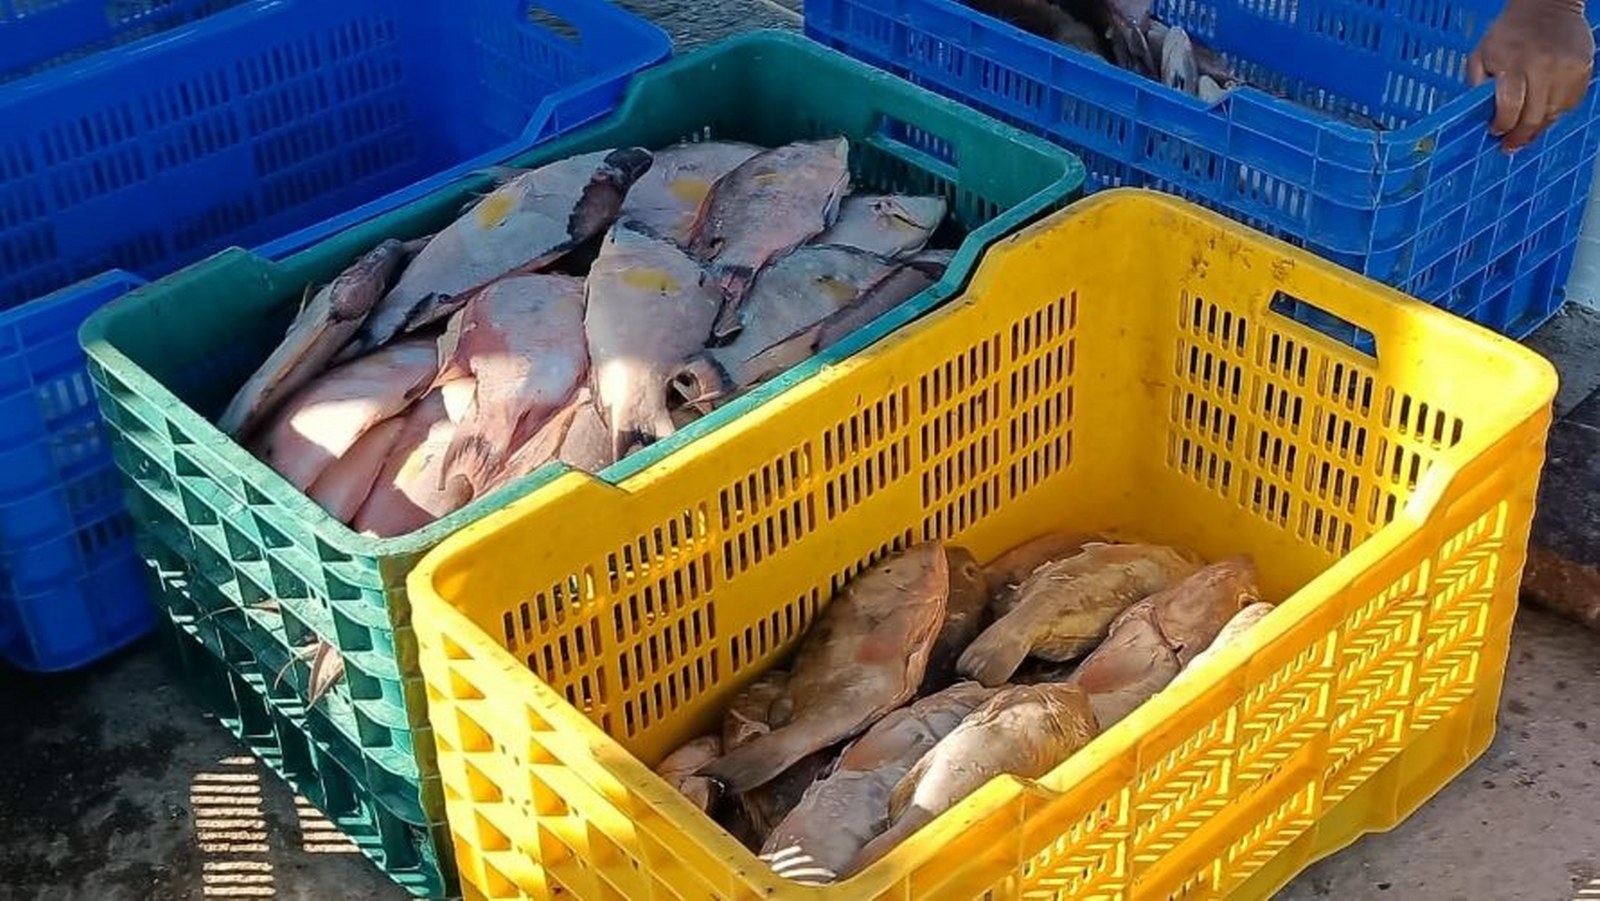 El mal clima, la pesca furtiva y las vedas son las principales problemáticas a las que se enfrentan los pescadores